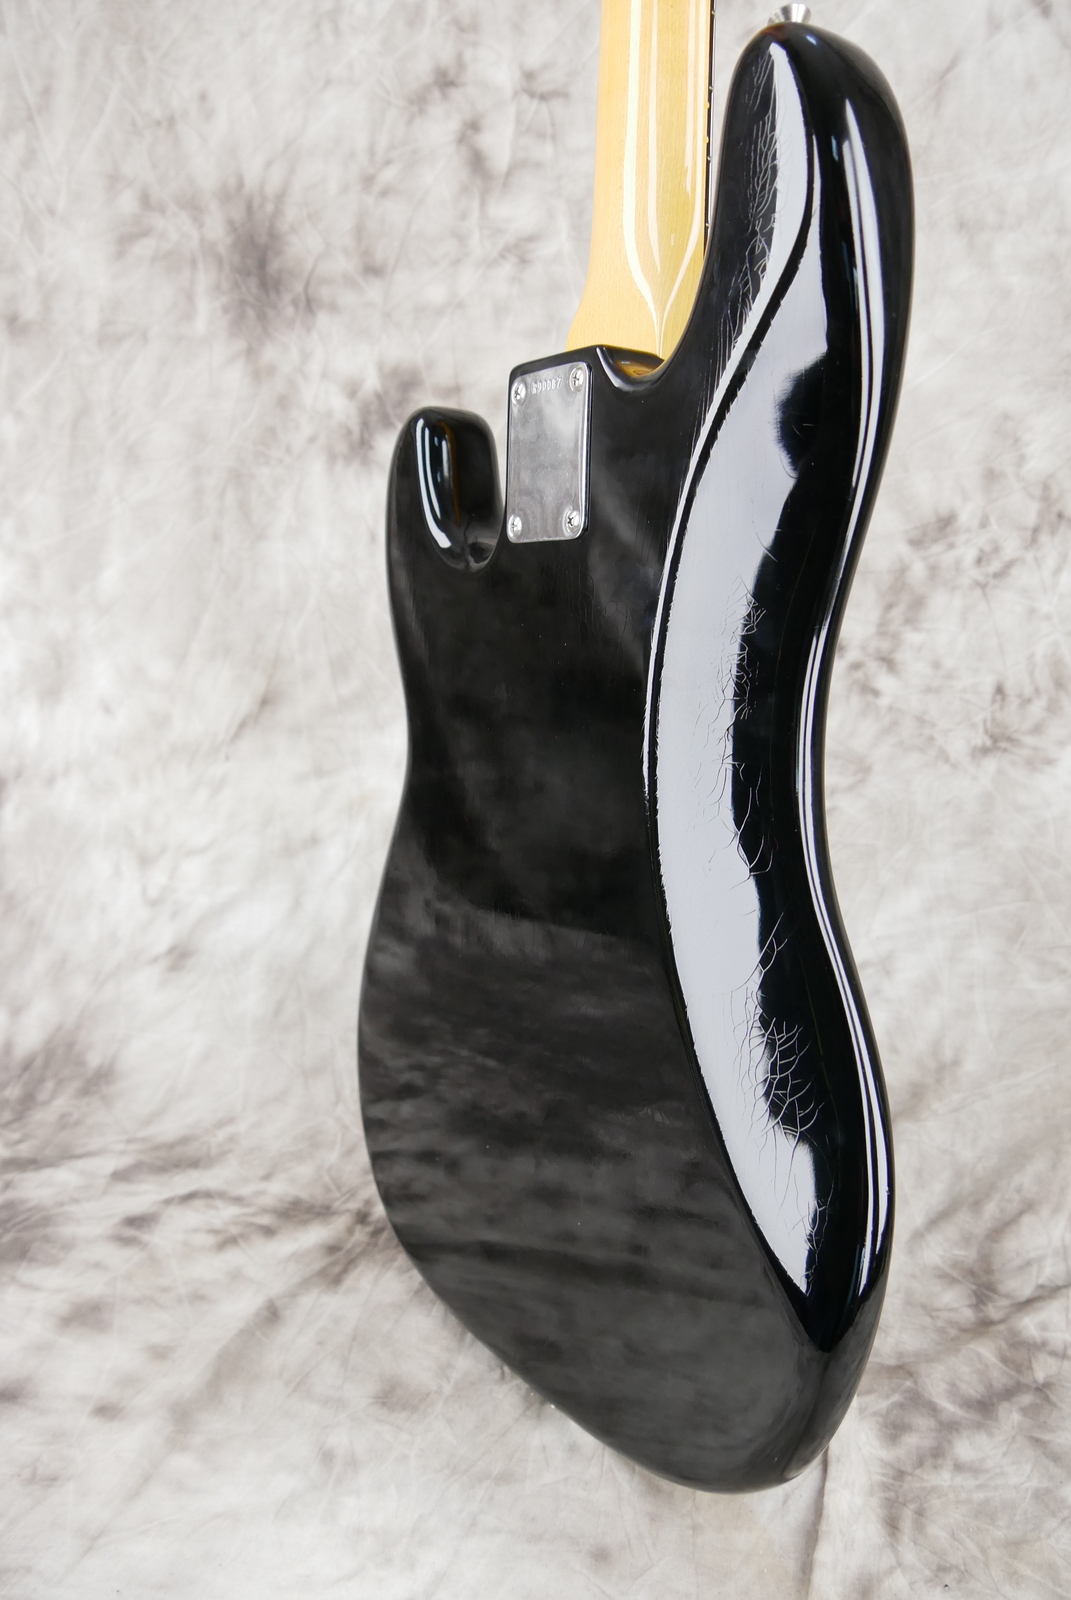 Fender-Precision-Bass-59-RI-black-Custom-Shop-ebony-fretboard-012.JPG